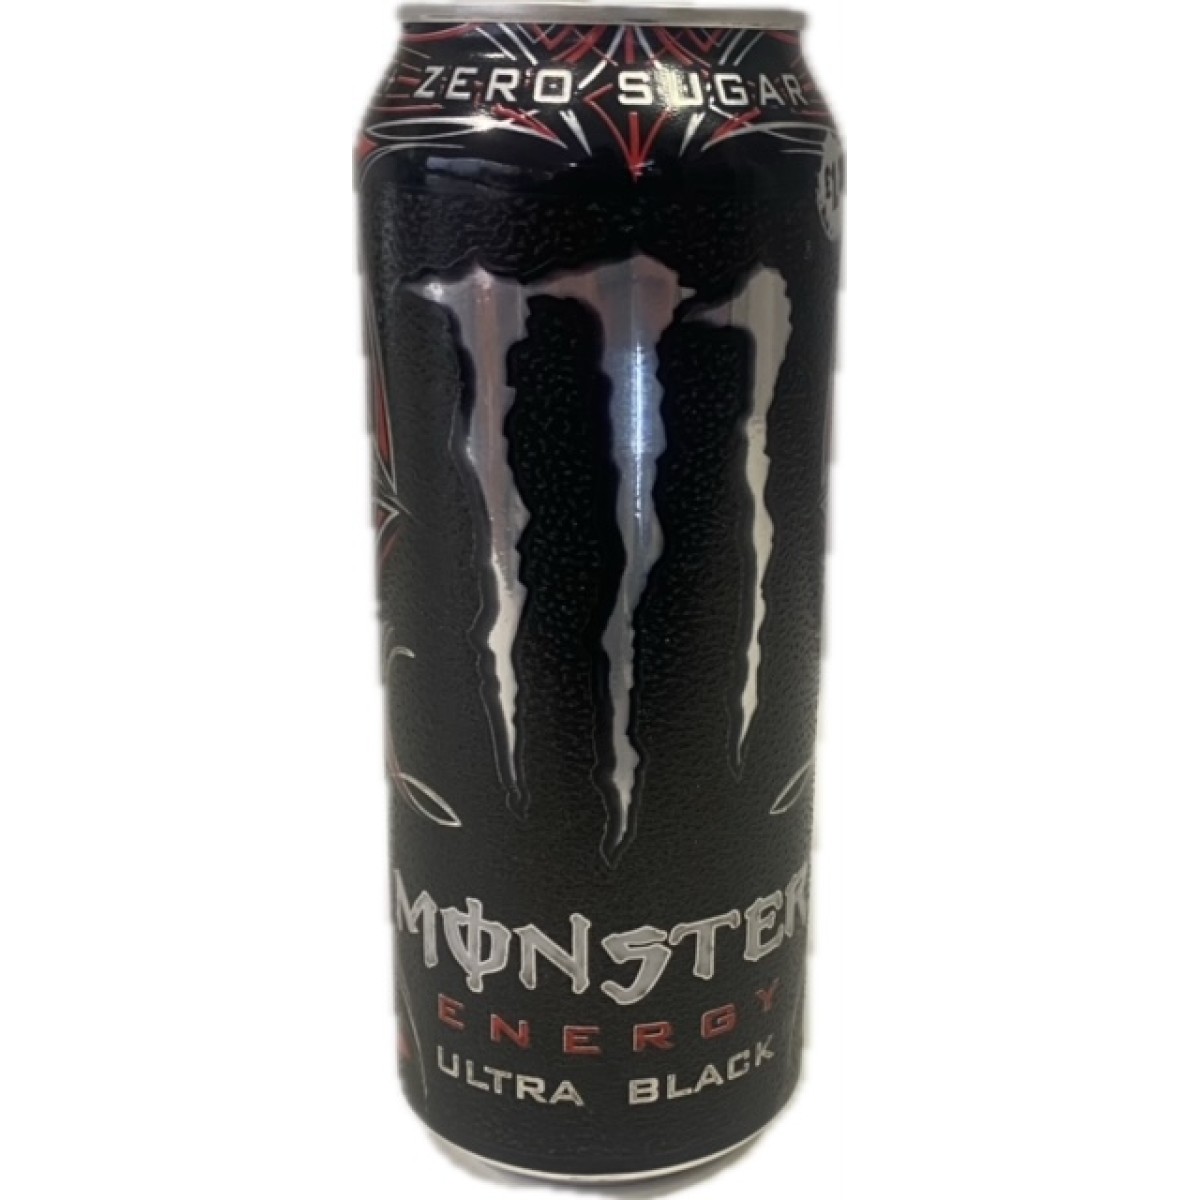 Monster ultra black 500ml